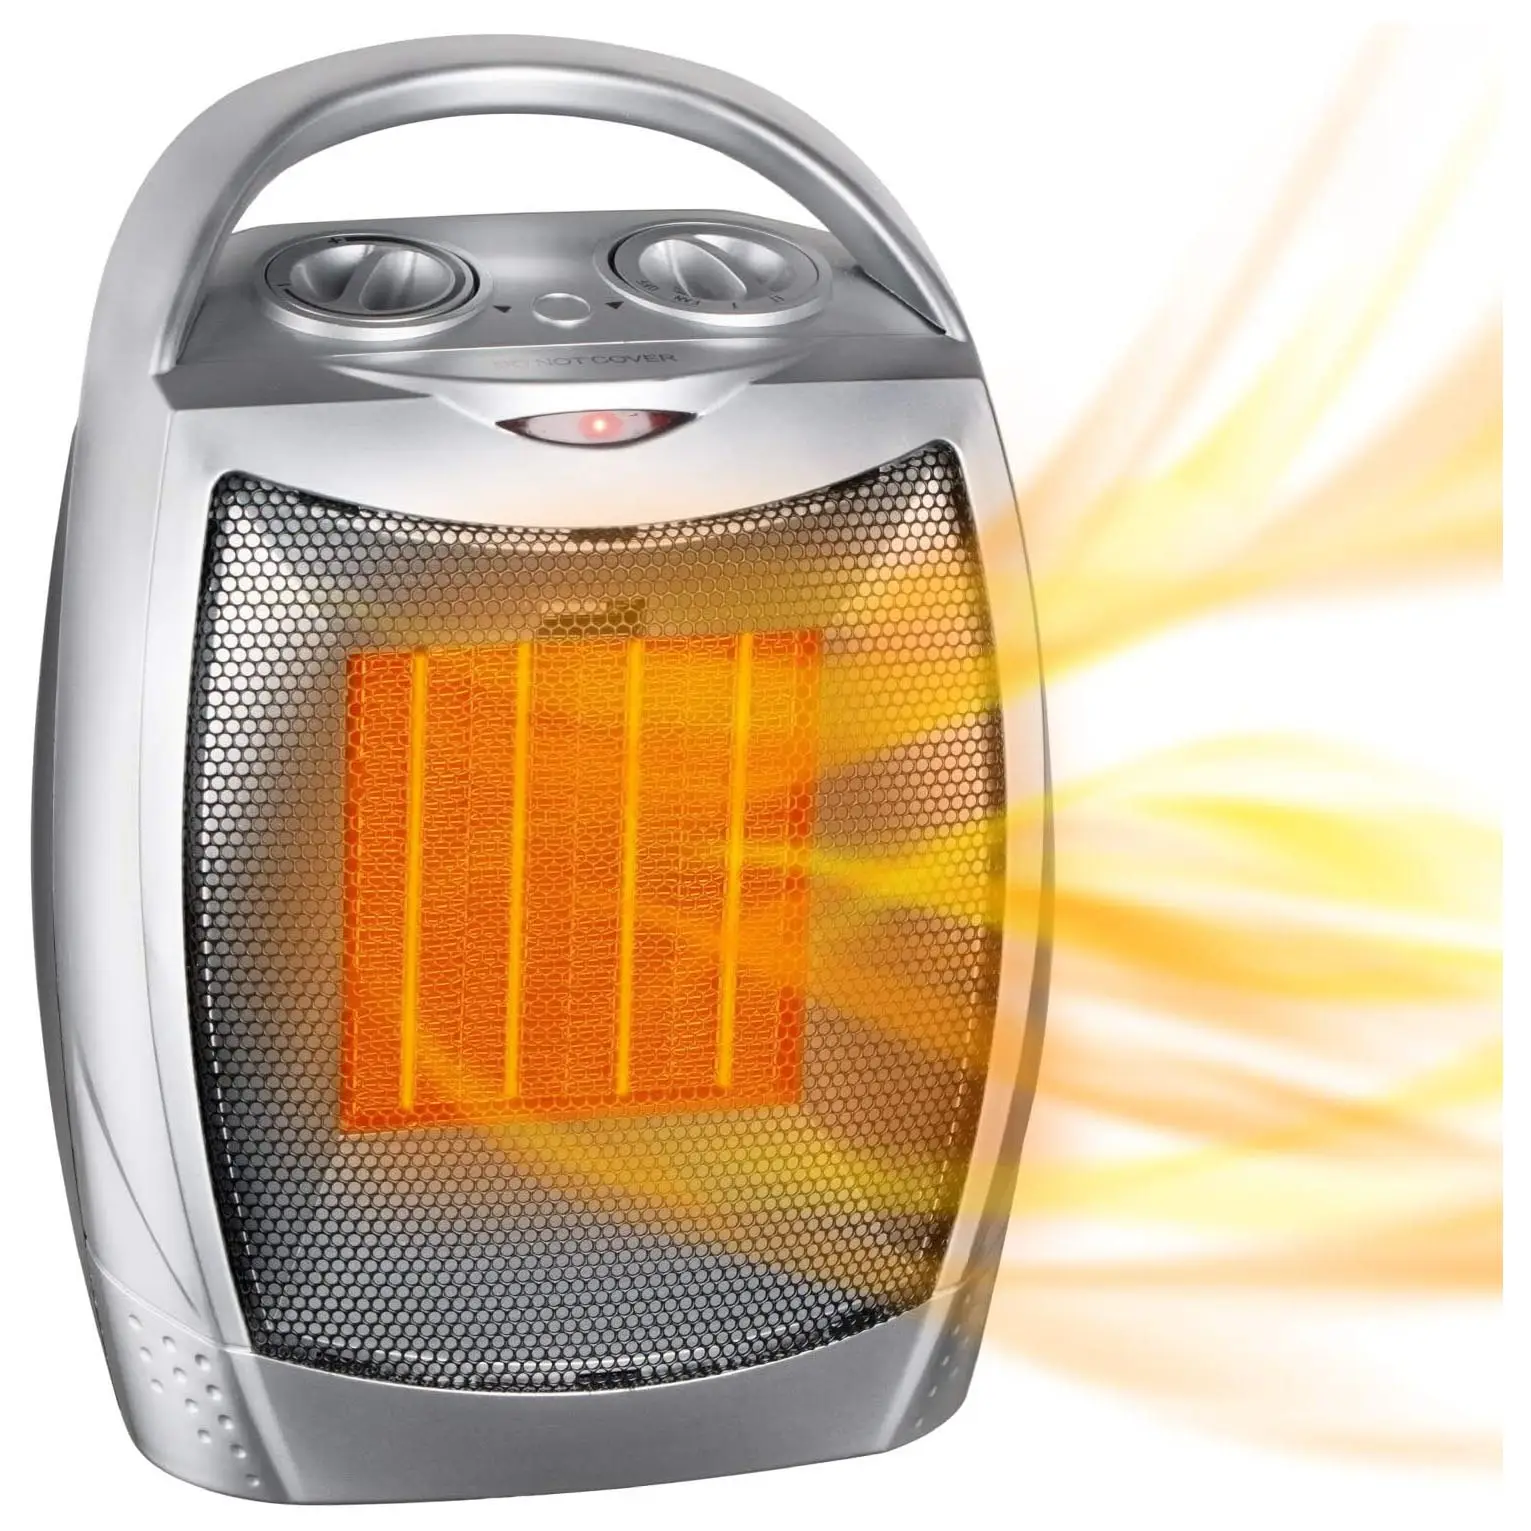 Chauffage électrique Portable avec Thermostat, ventilateur de chauffage en céramique sûr et silencieux de 1500W/750W, chauffe jusqu'à 200 pieds carrés pour le bureau